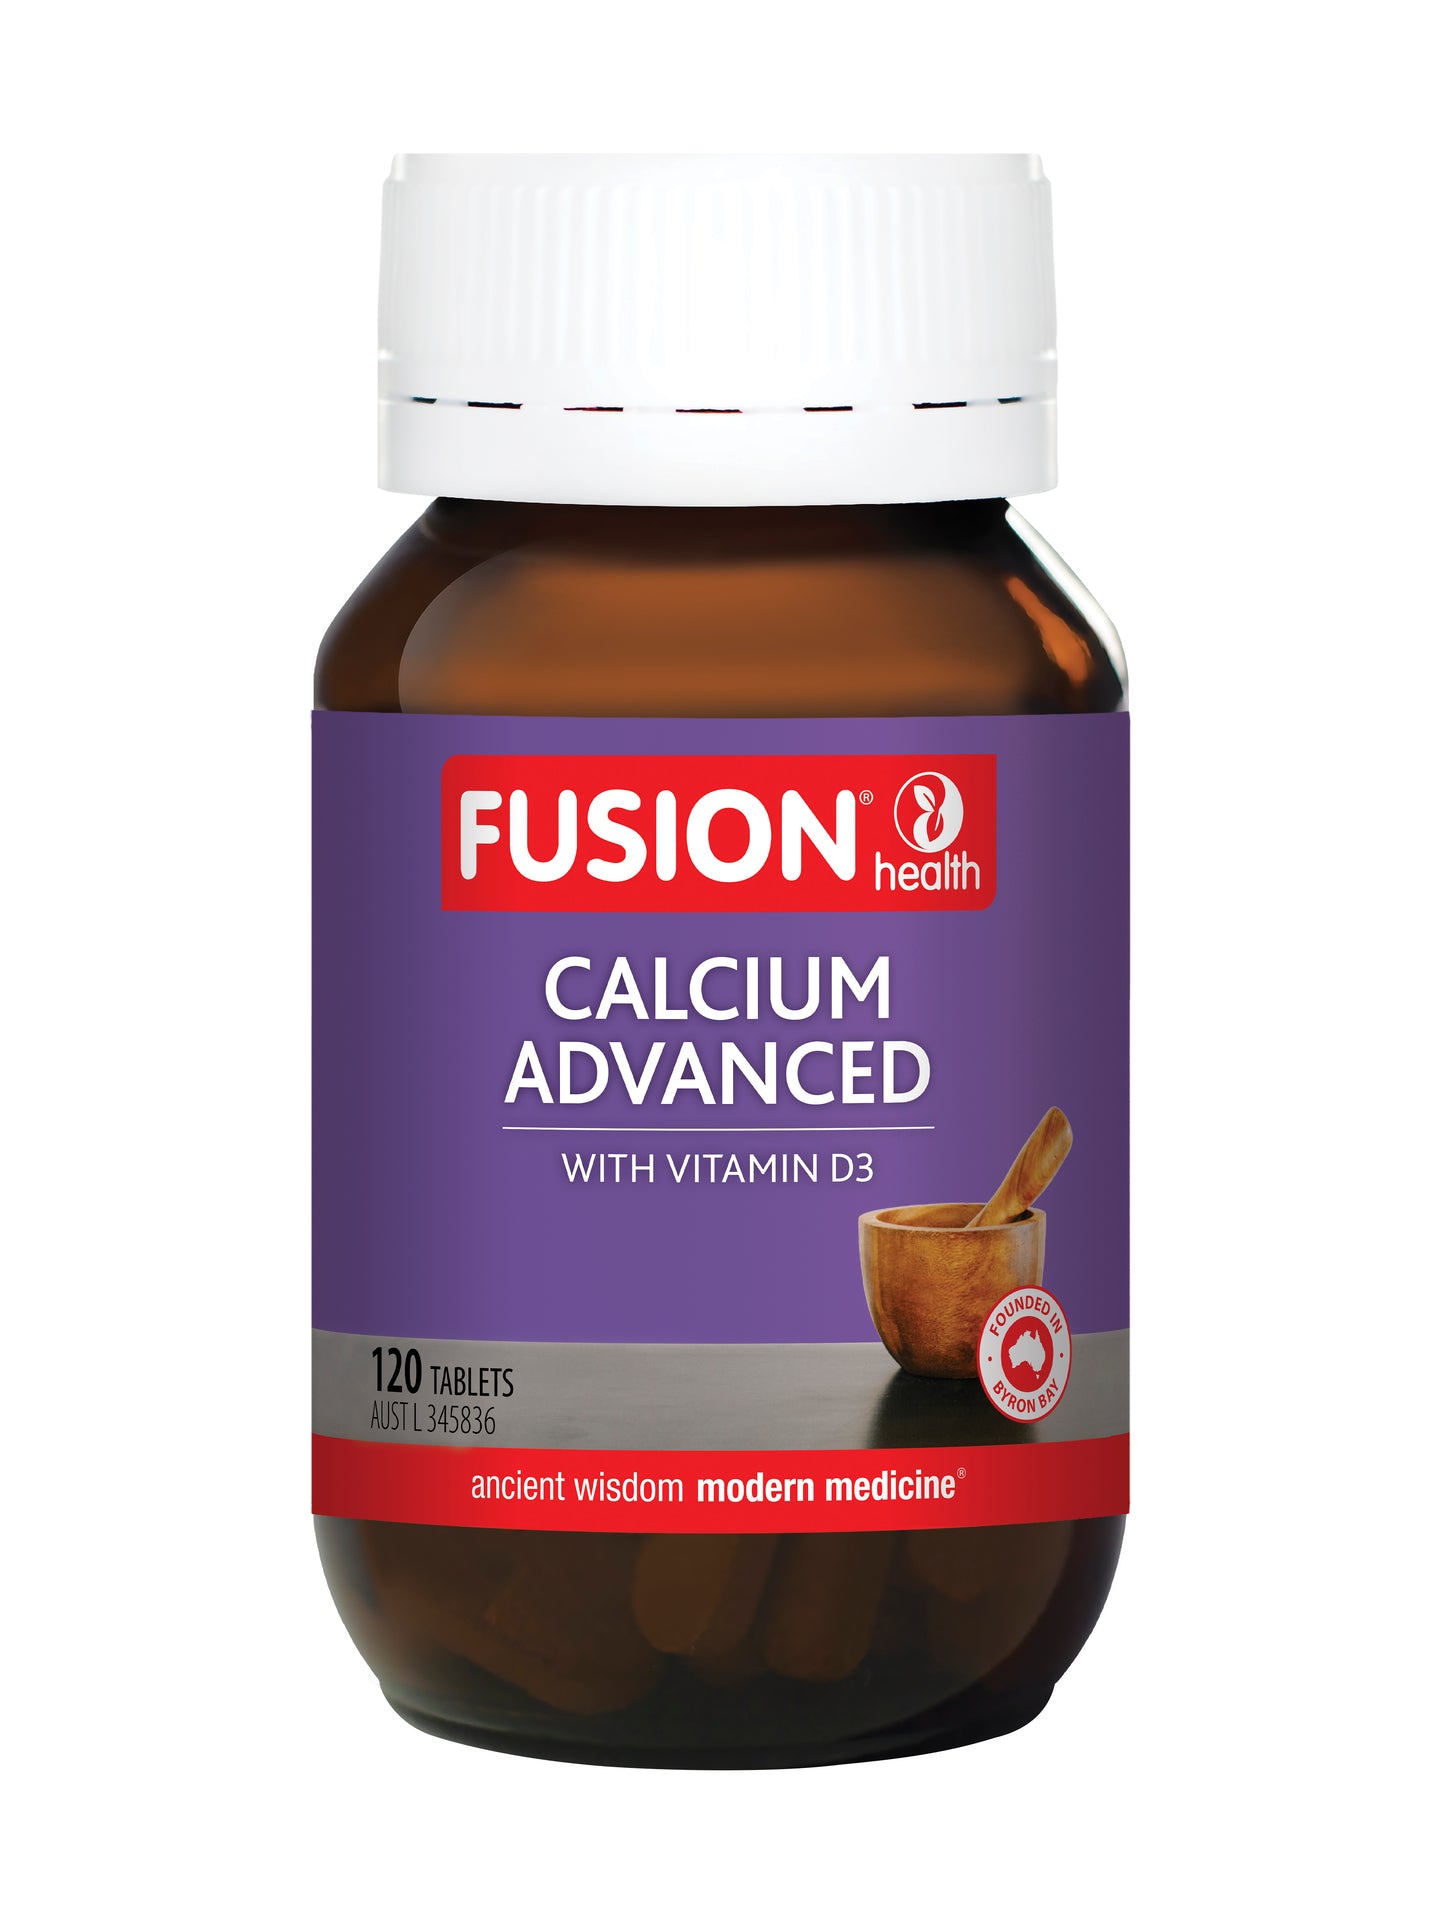 Calcium Advanced